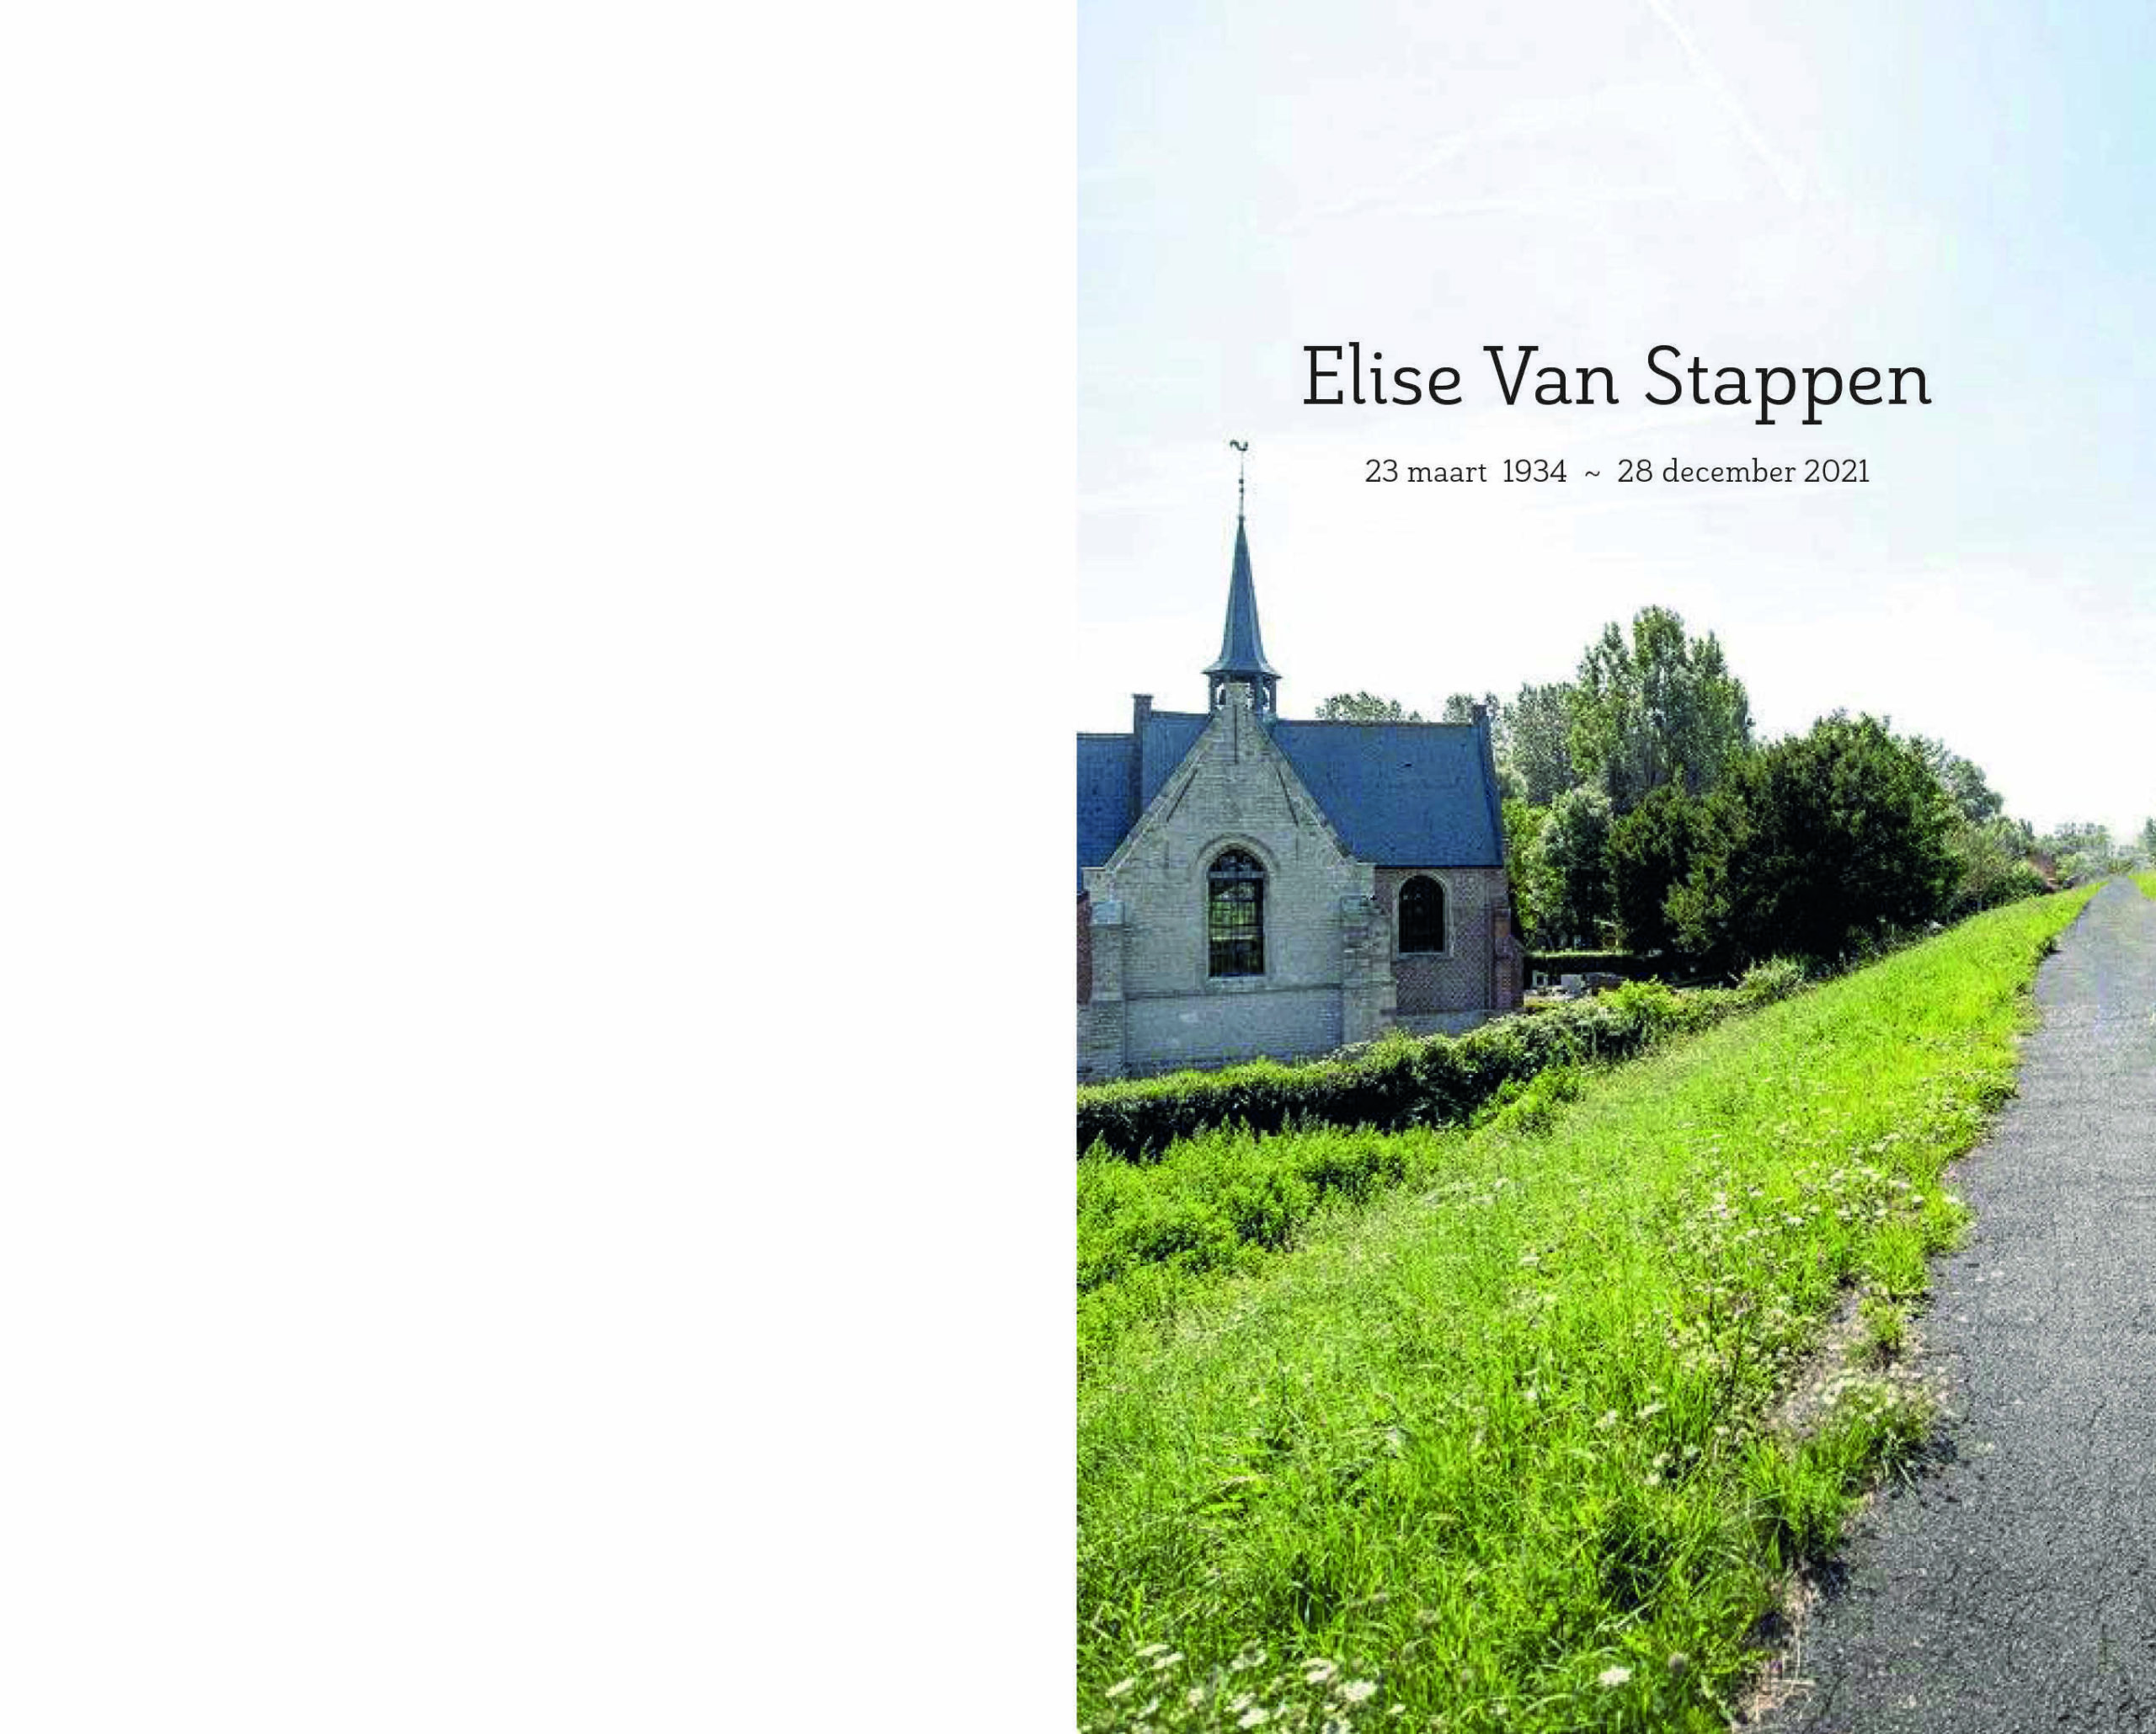 Elise Van Stappen1 rouwbrief